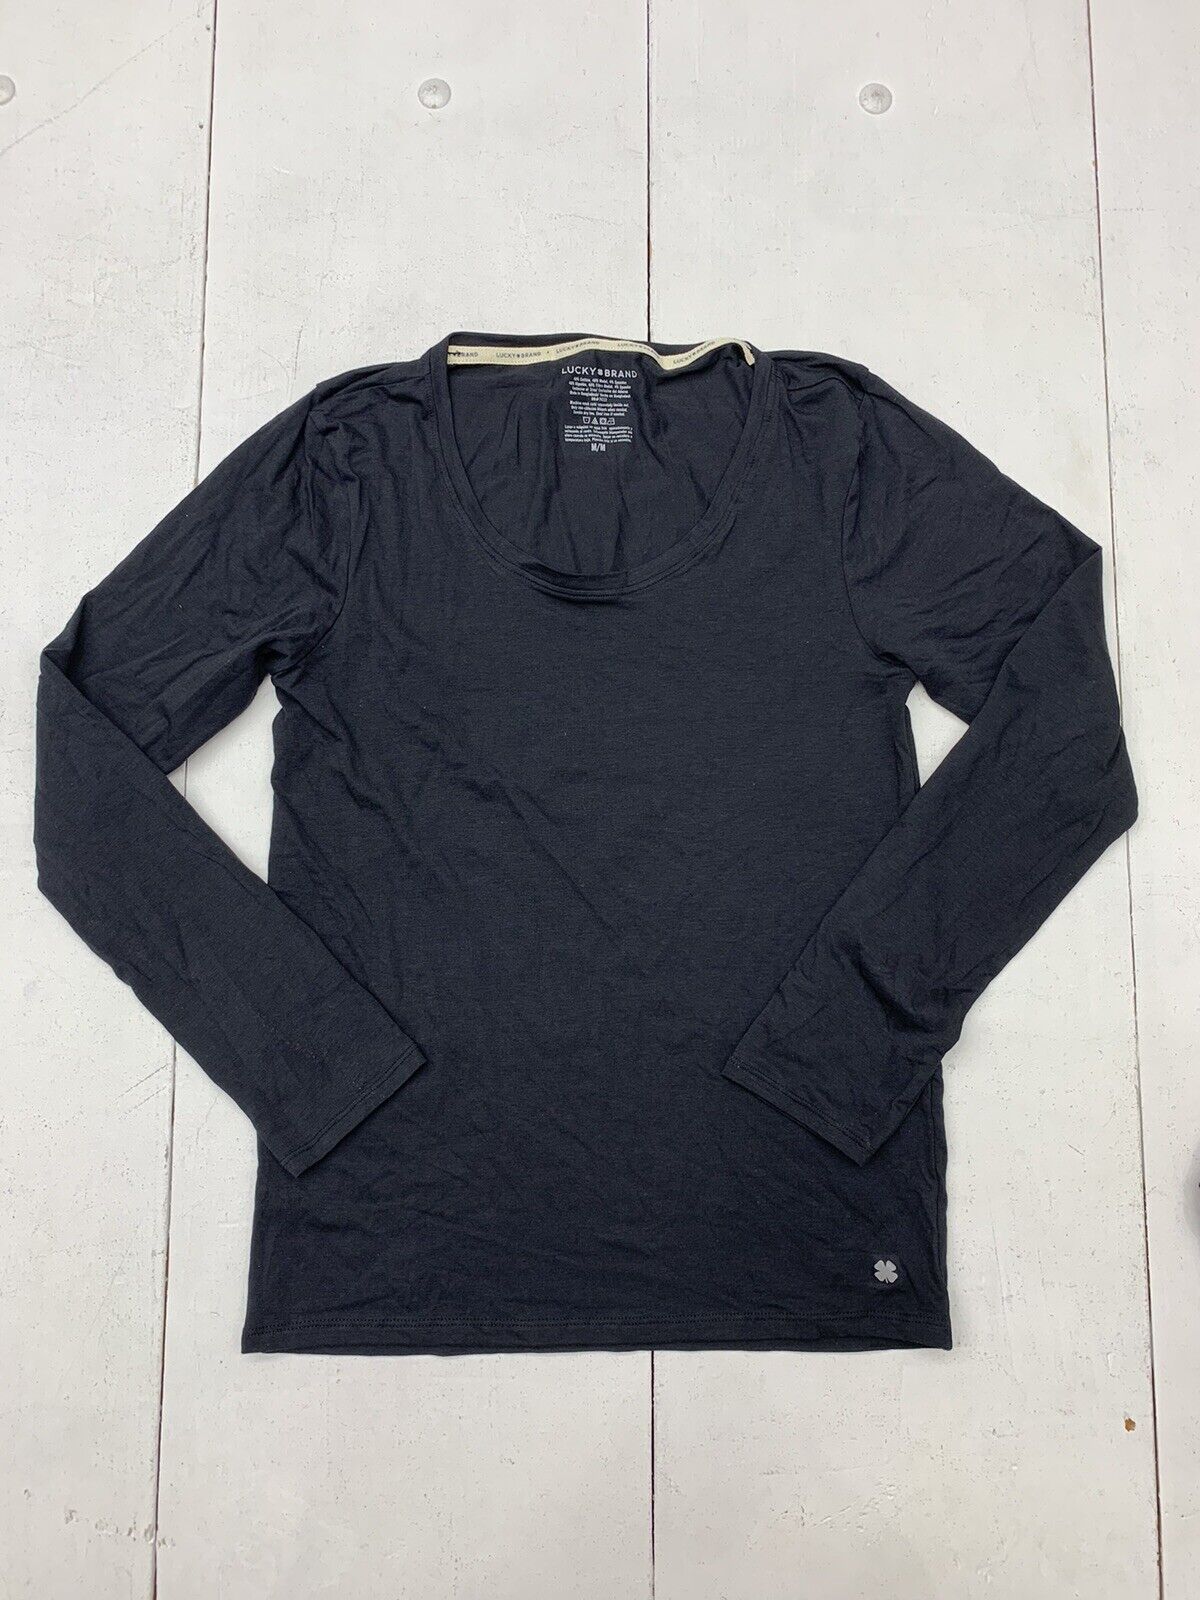 Lucky Brand Womens Black Long Sleeve Shirt Size Medium - beyond